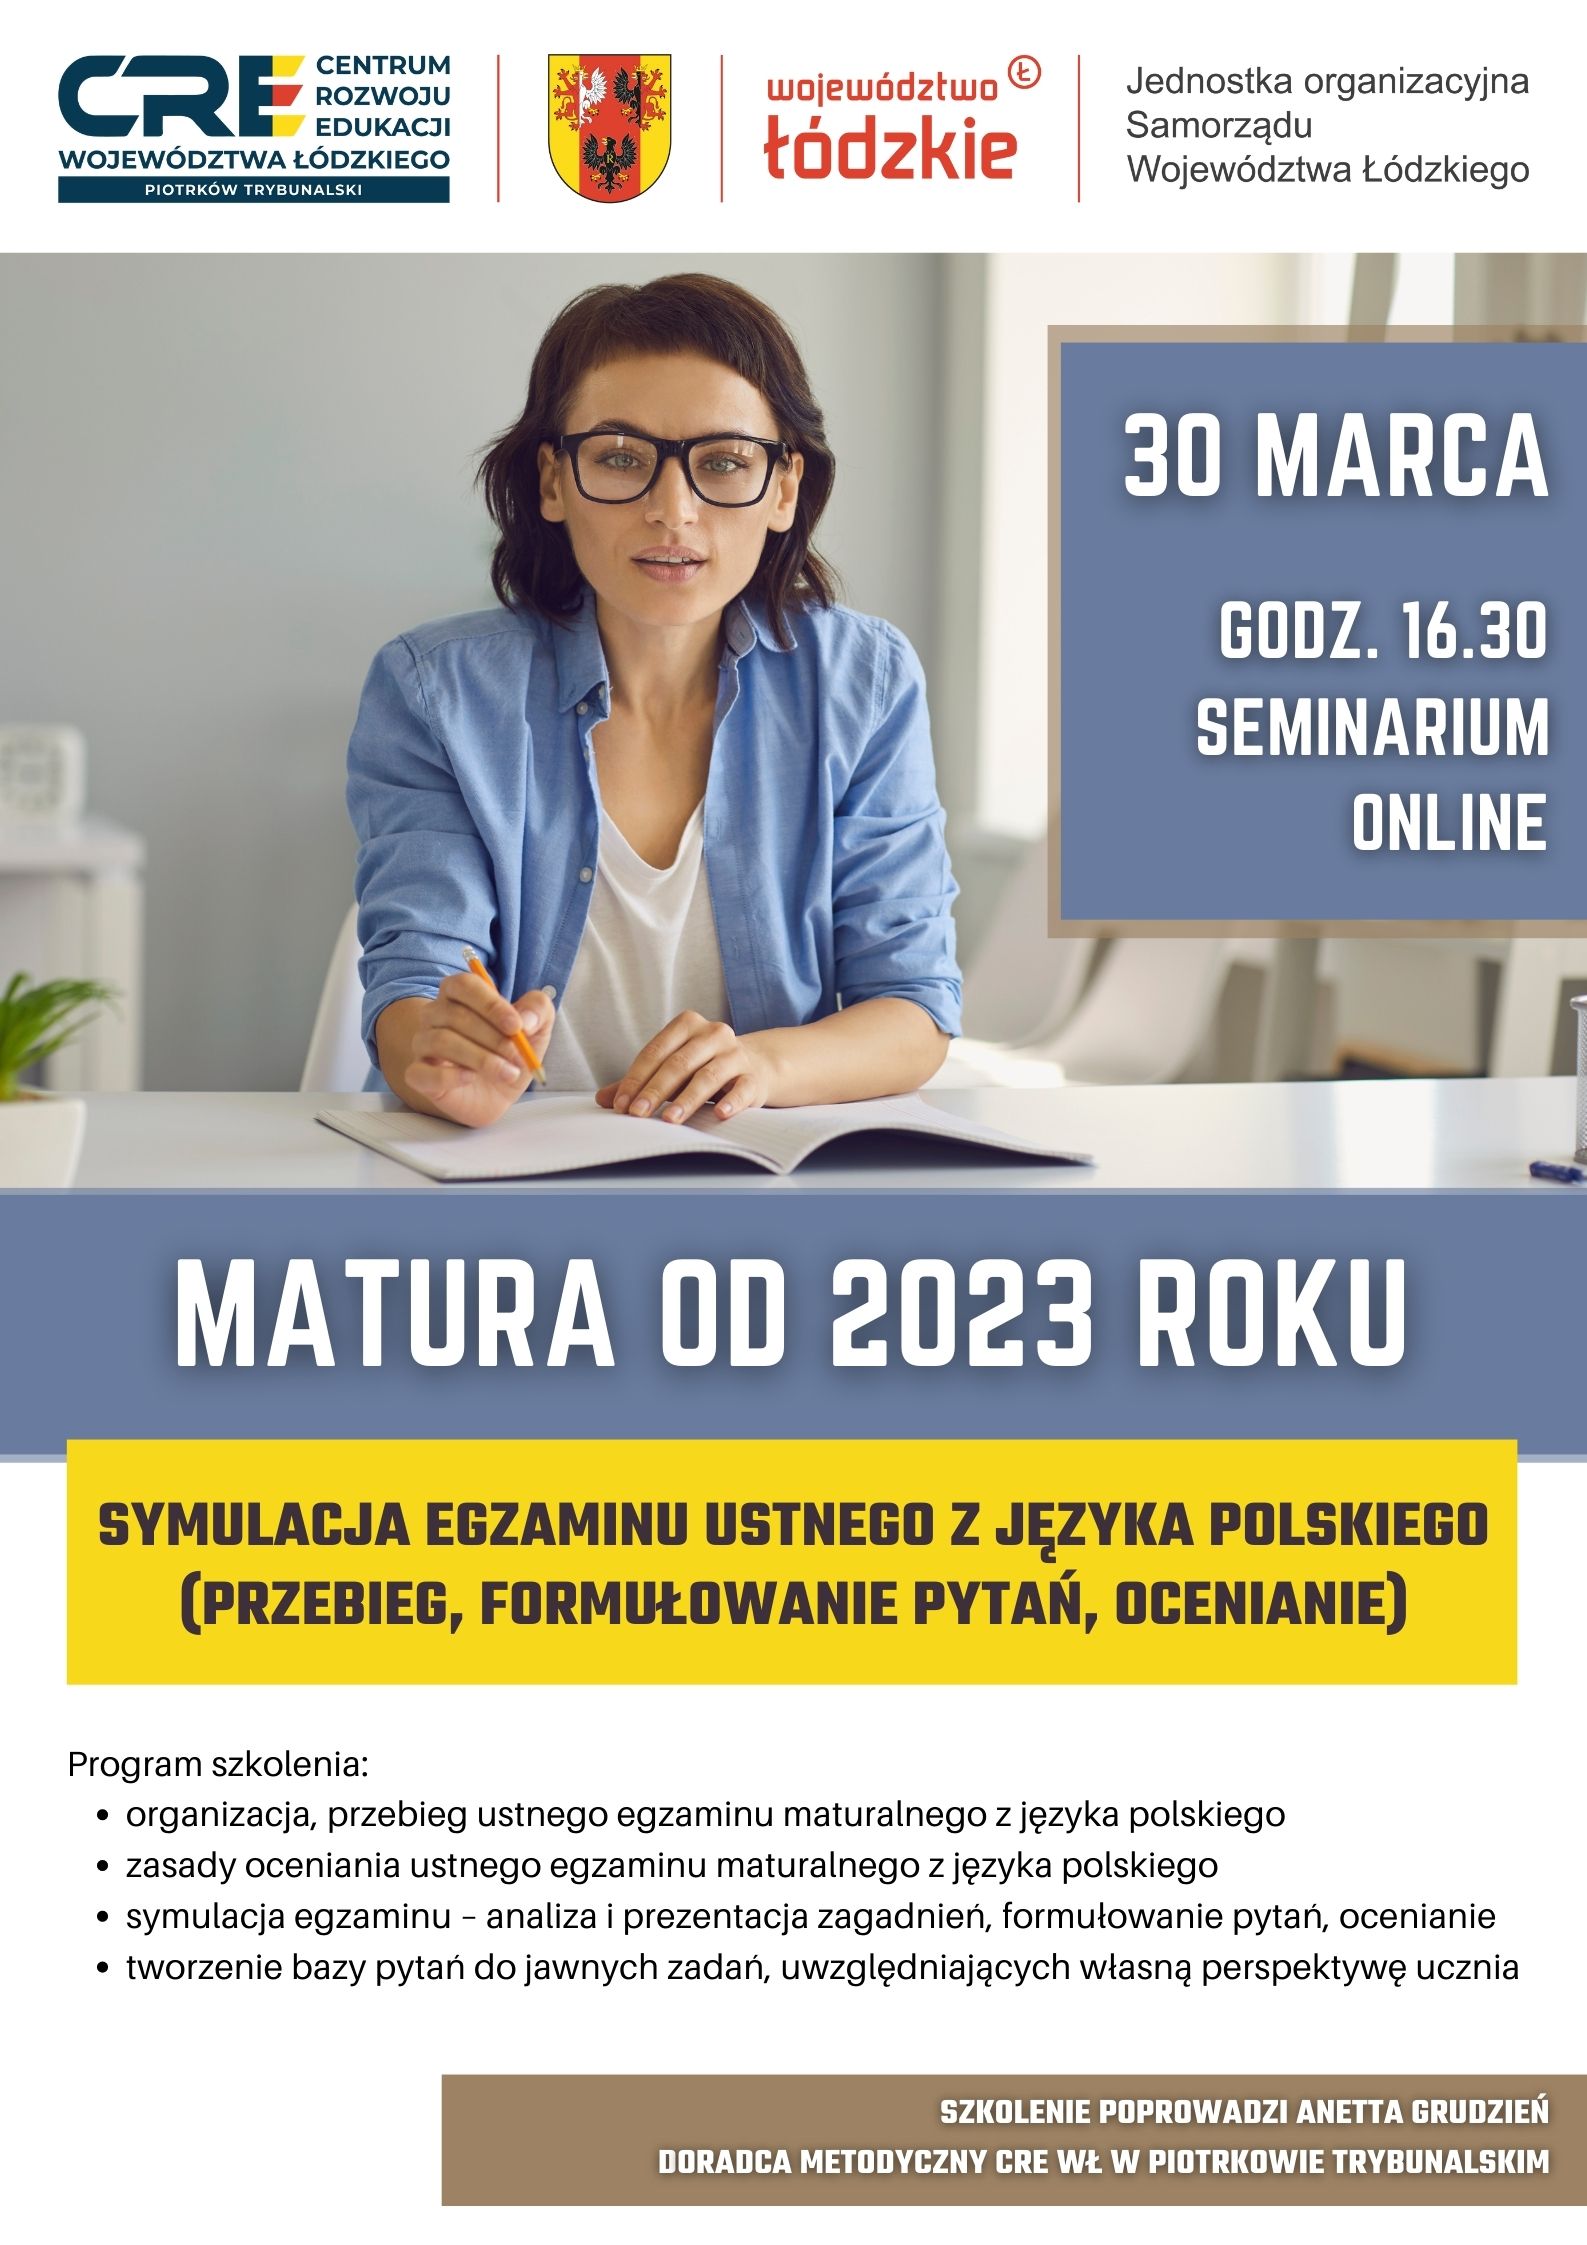 Matura od 2023 r. – symulacja egzaminu ustnego z języka polskiego (przebieg, formułowanie pytań, ocenianie) 30.03.2023